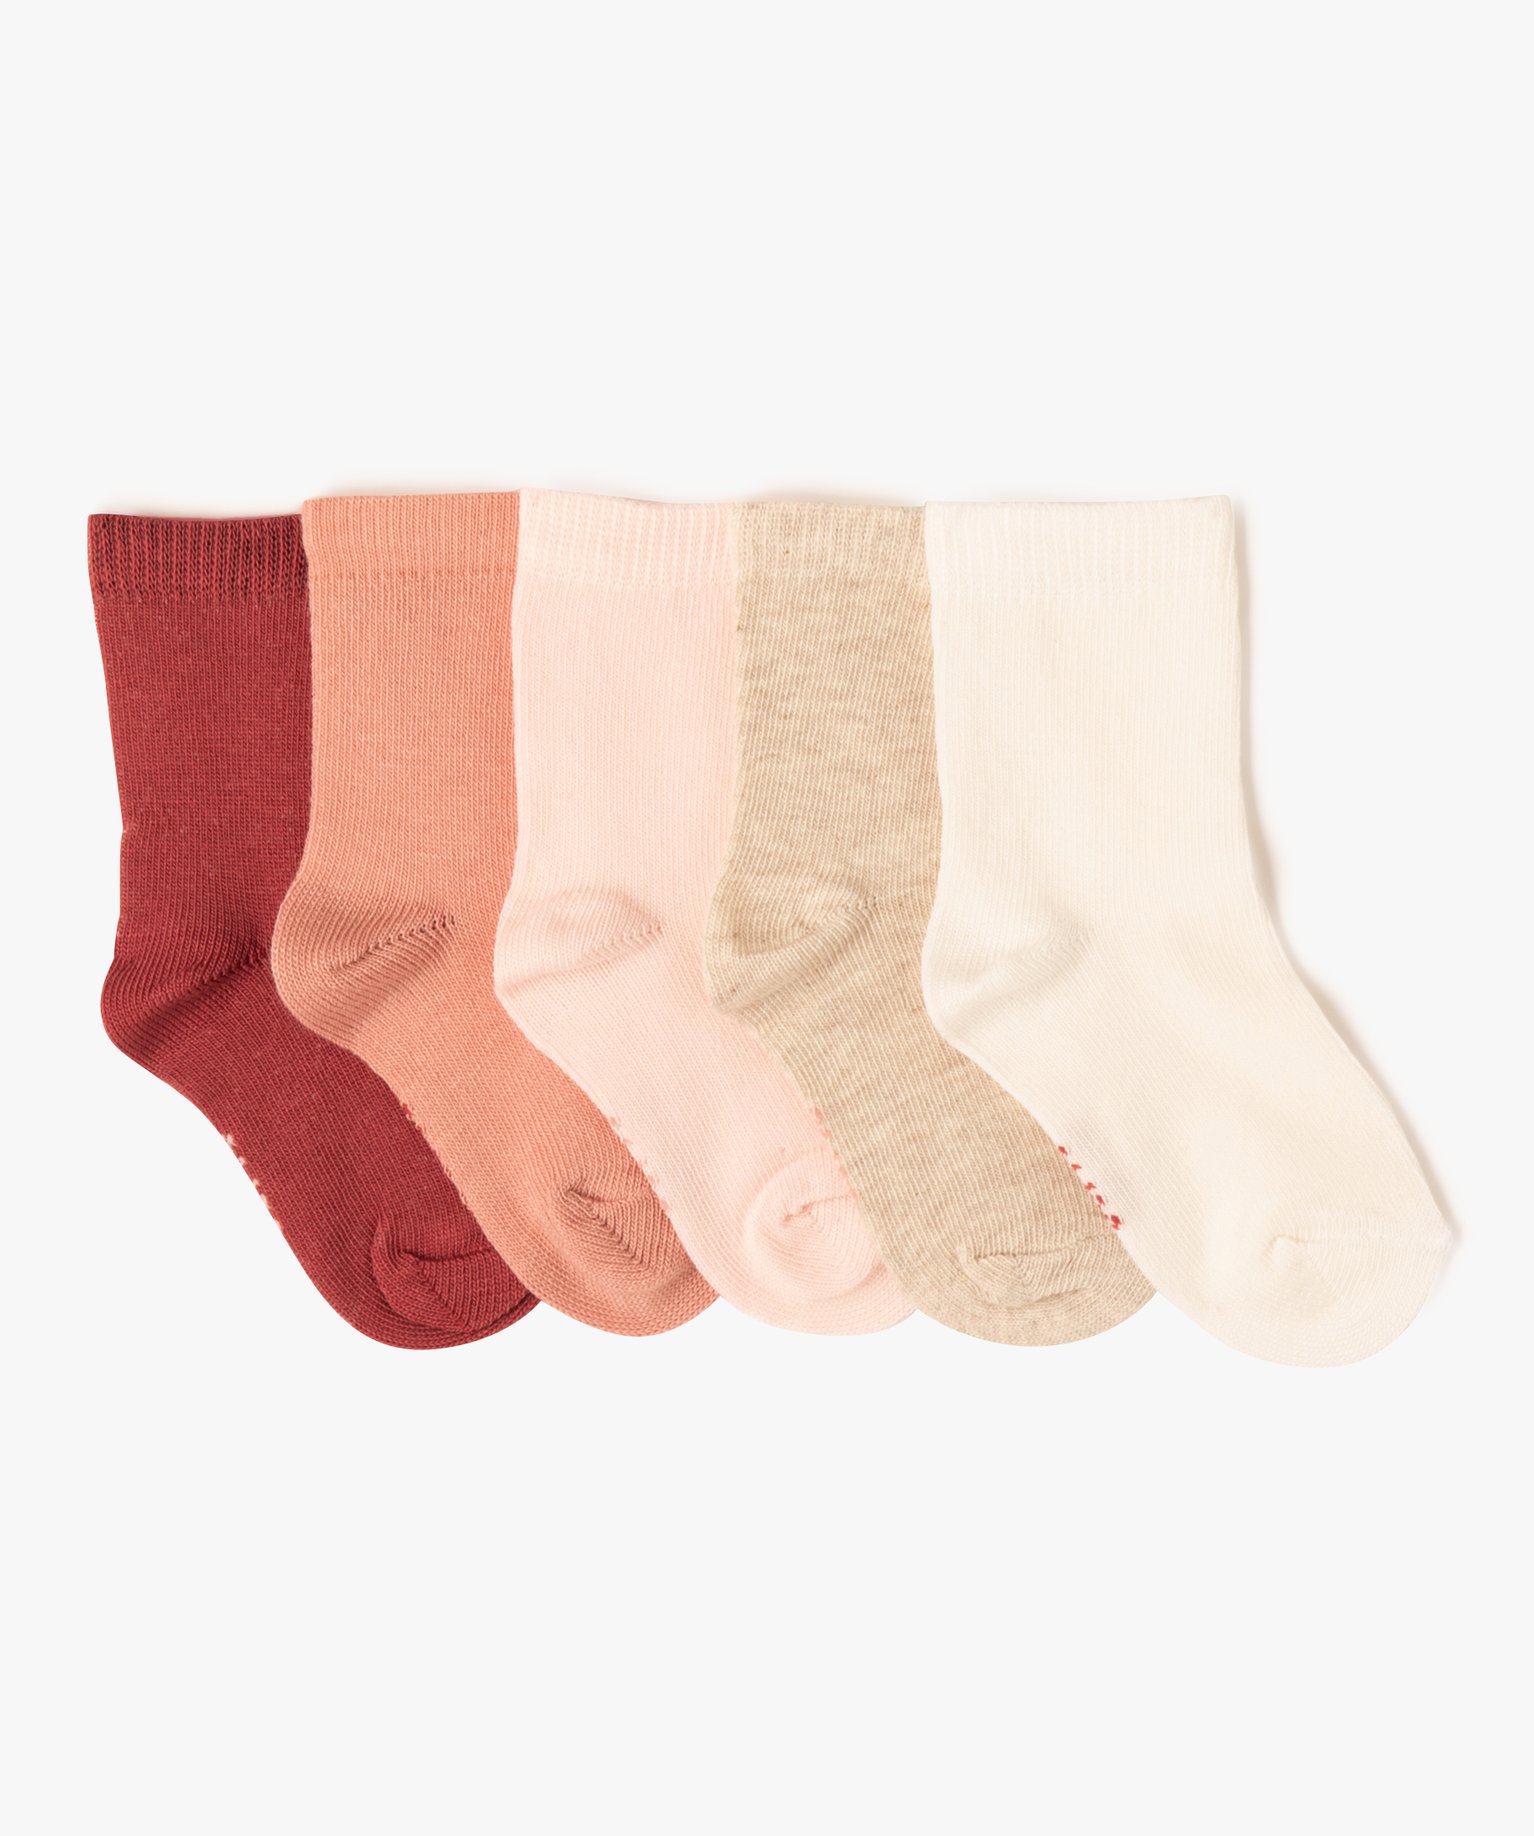 chaussettes unies bebe (lot de 5) rose chaussettes